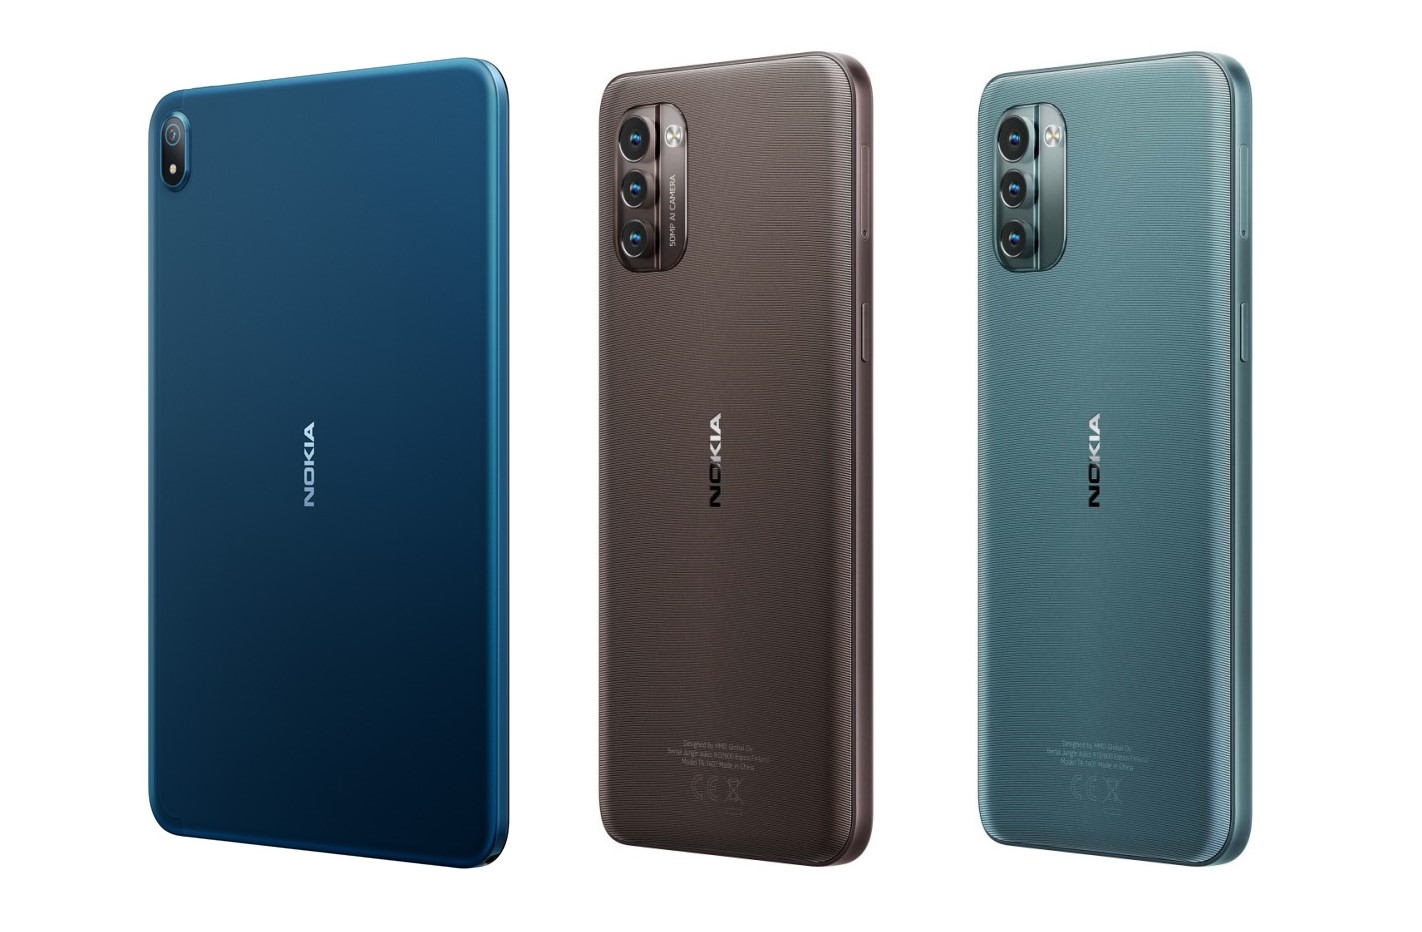 Nokia 2022 new model